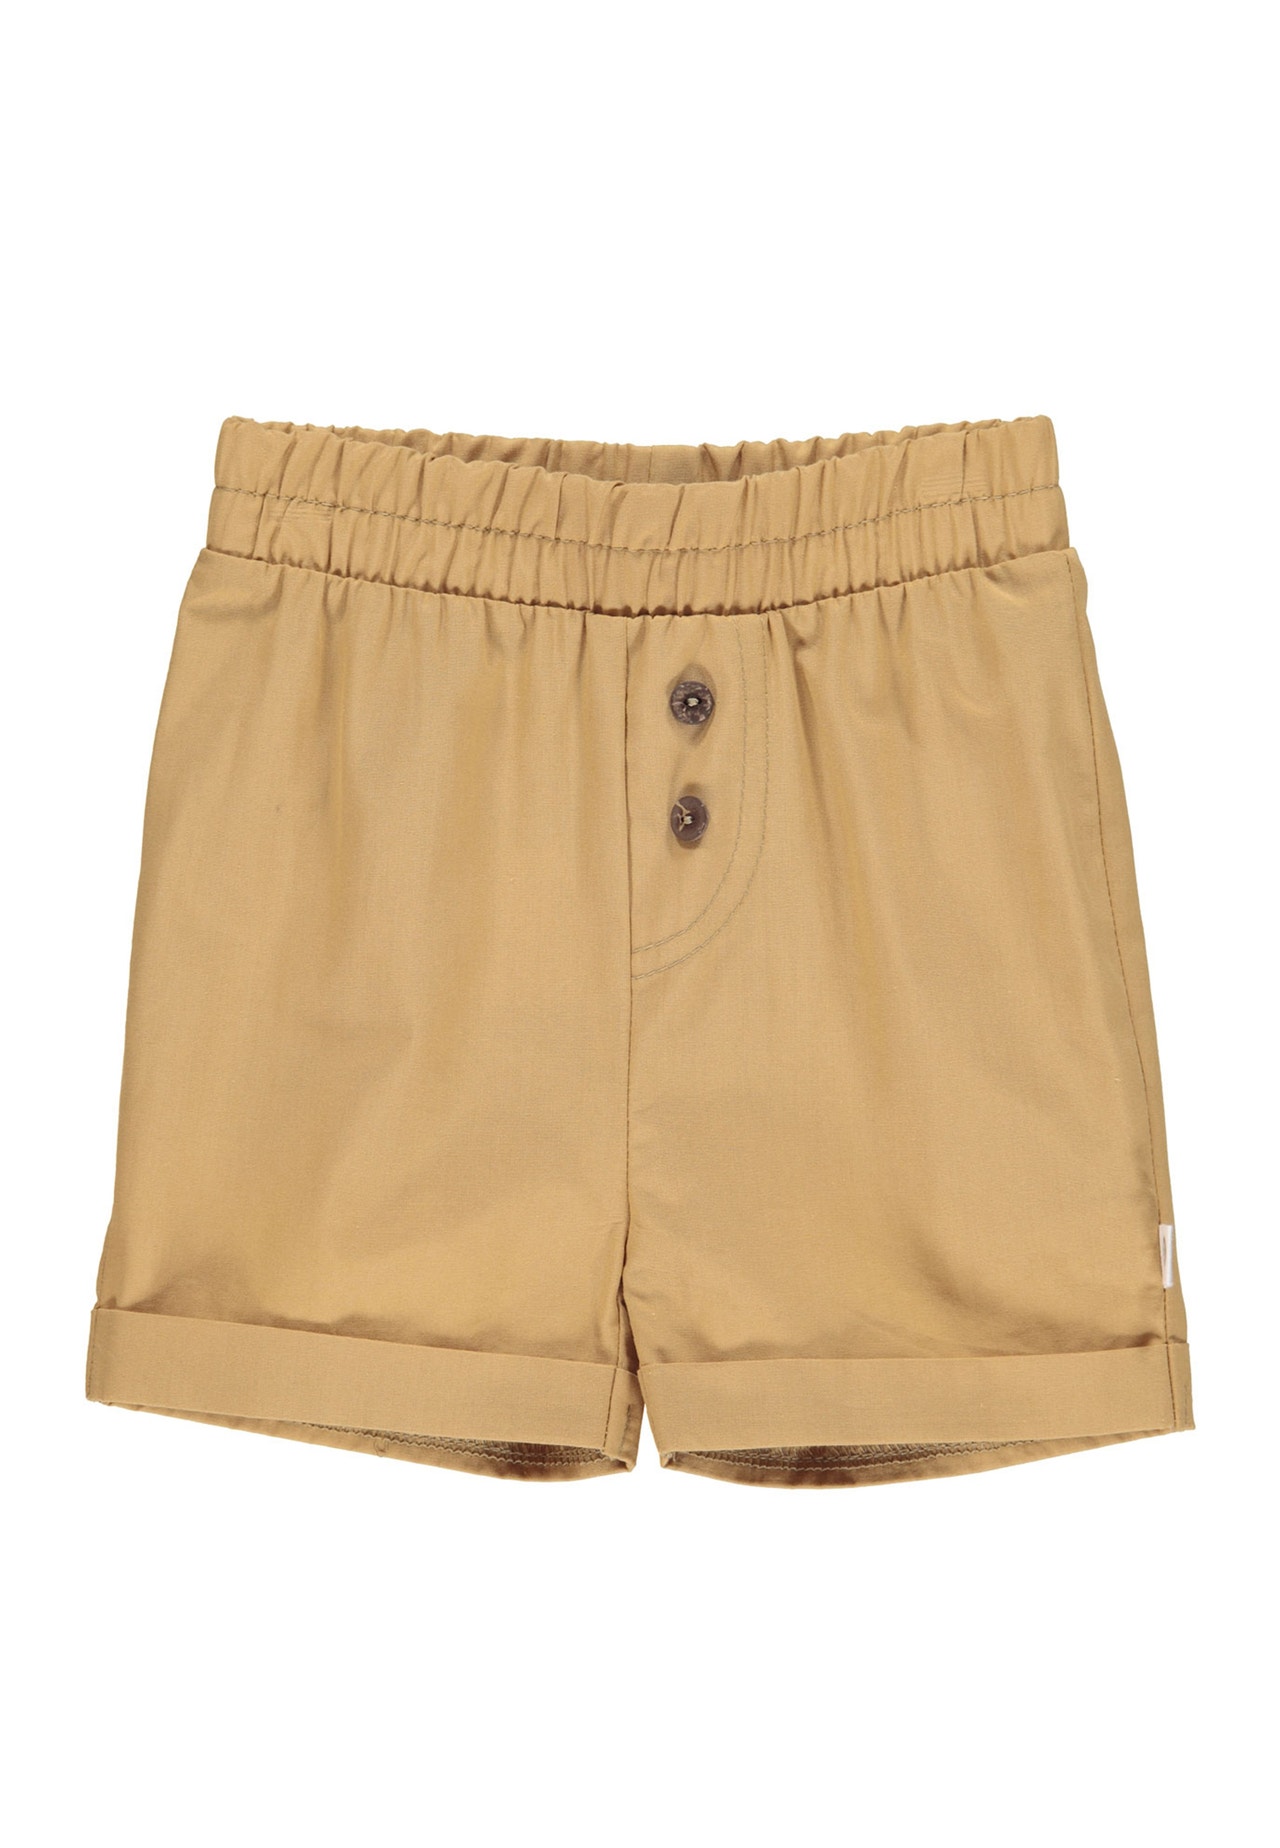 MAMA.LICIOUS Baby-shorts  -Cinnamon - 1532005900